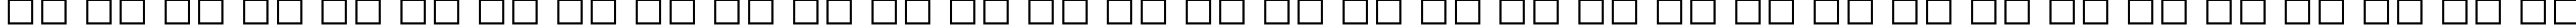 Пример написания русского алфавита шрифтом Gill Sans Ultra Bold